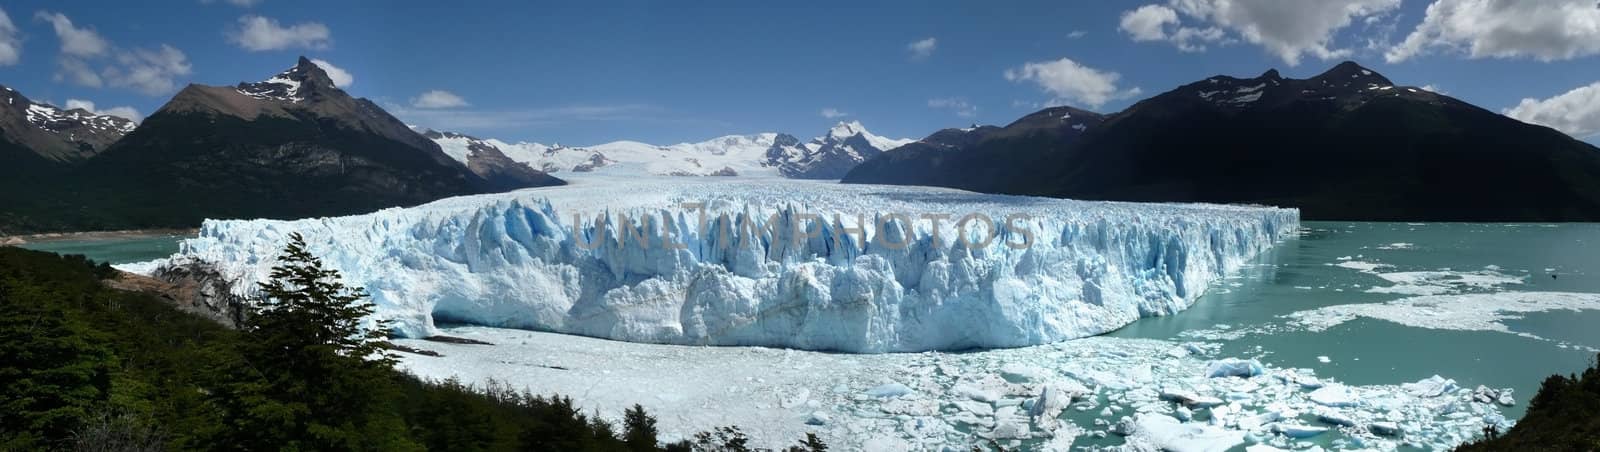 Perito Moreno Icebergs by daboost